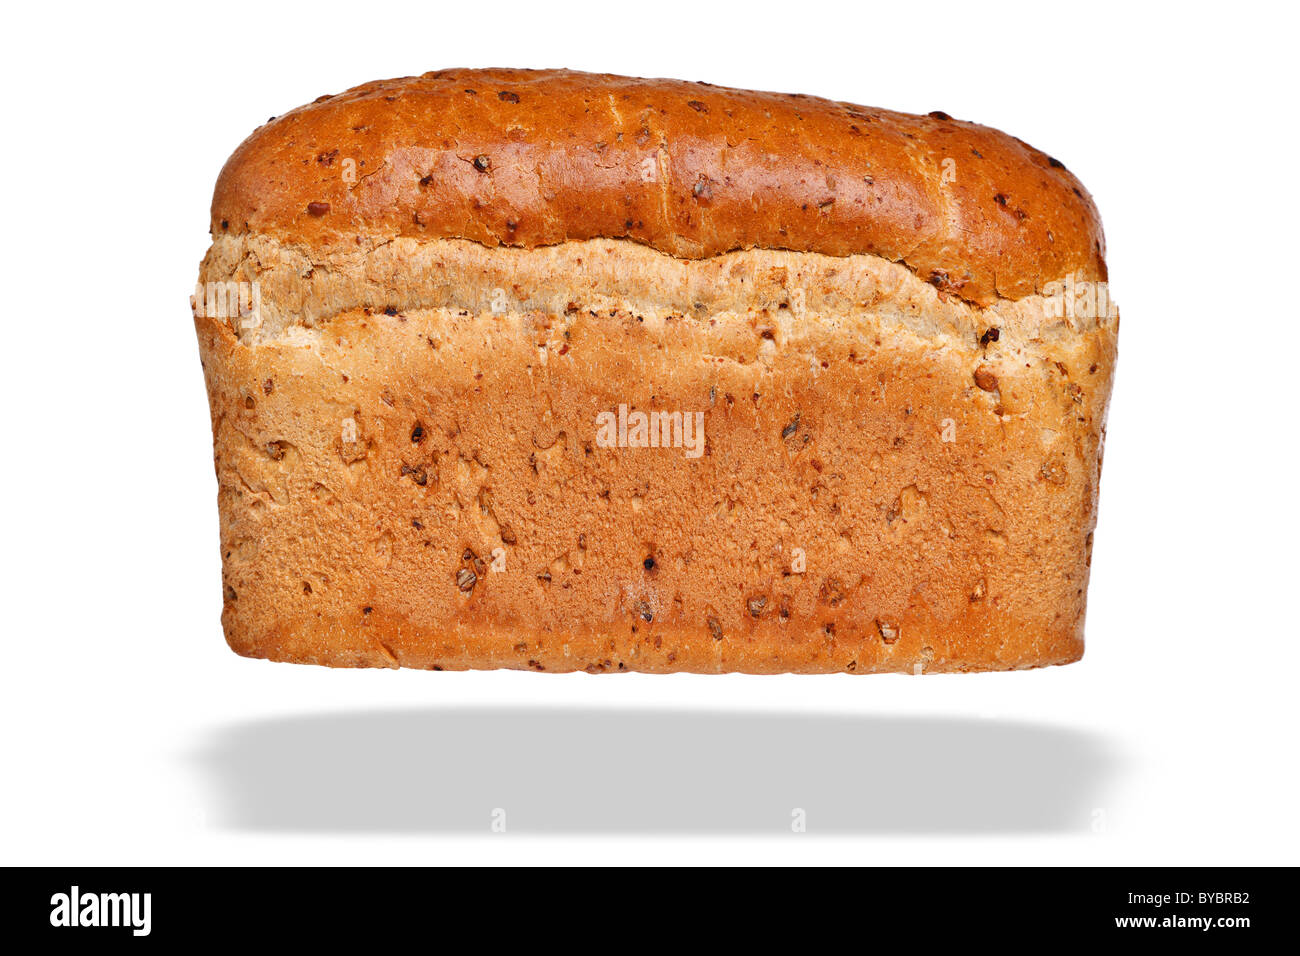 Foto di un granaio integrale della pagnotta di pane, isolato su uno sfondo bianco con ombra flottante. Foto Stock